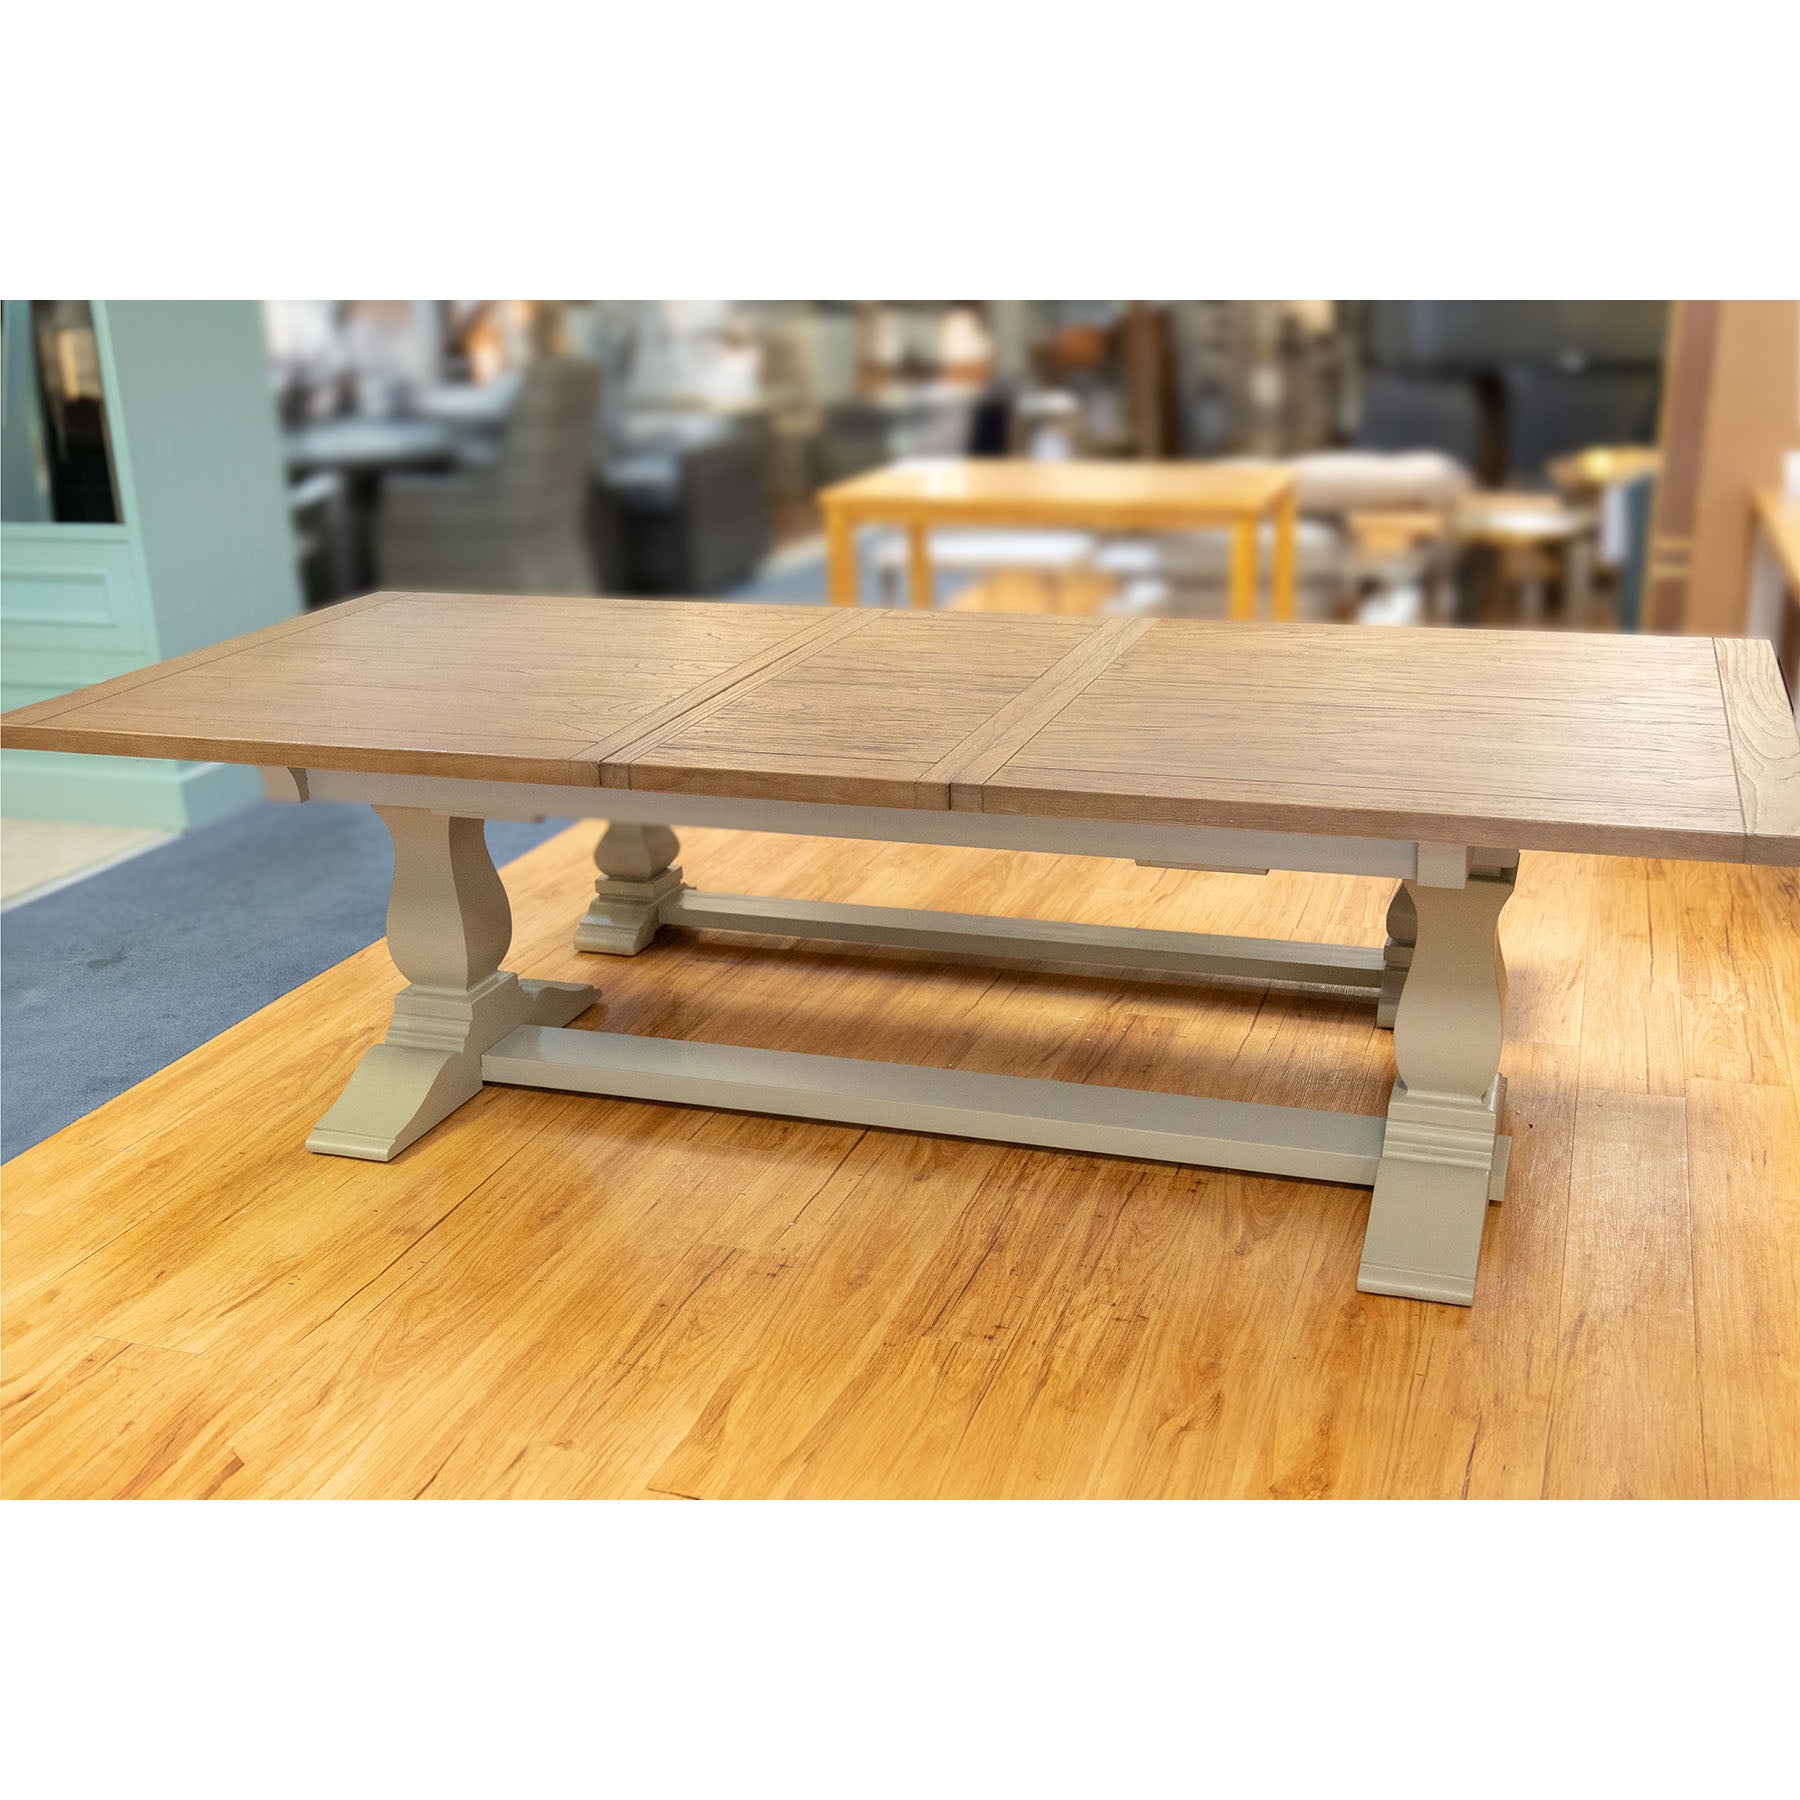 Sara 2 Ext Table – Hardwick/Rustic Brown - Display Model